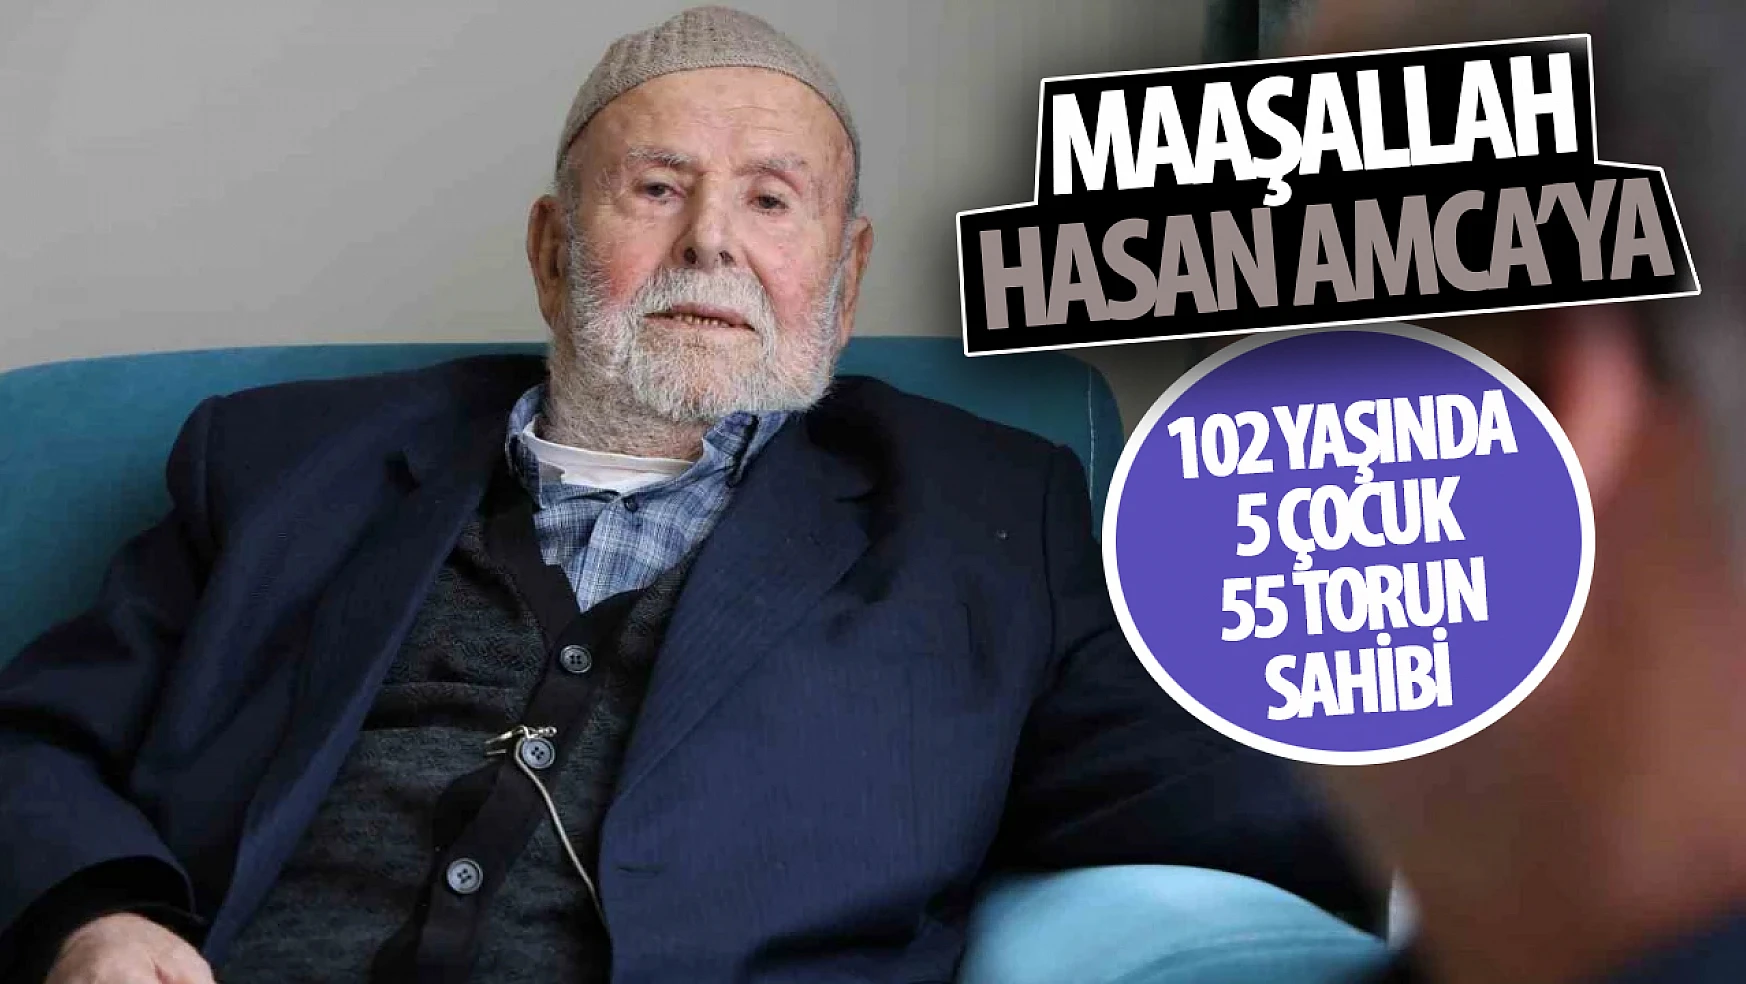 Konya'da yaşayan 102 yaşındaki Hasan amca: 5 çocuğu 55 torunu var